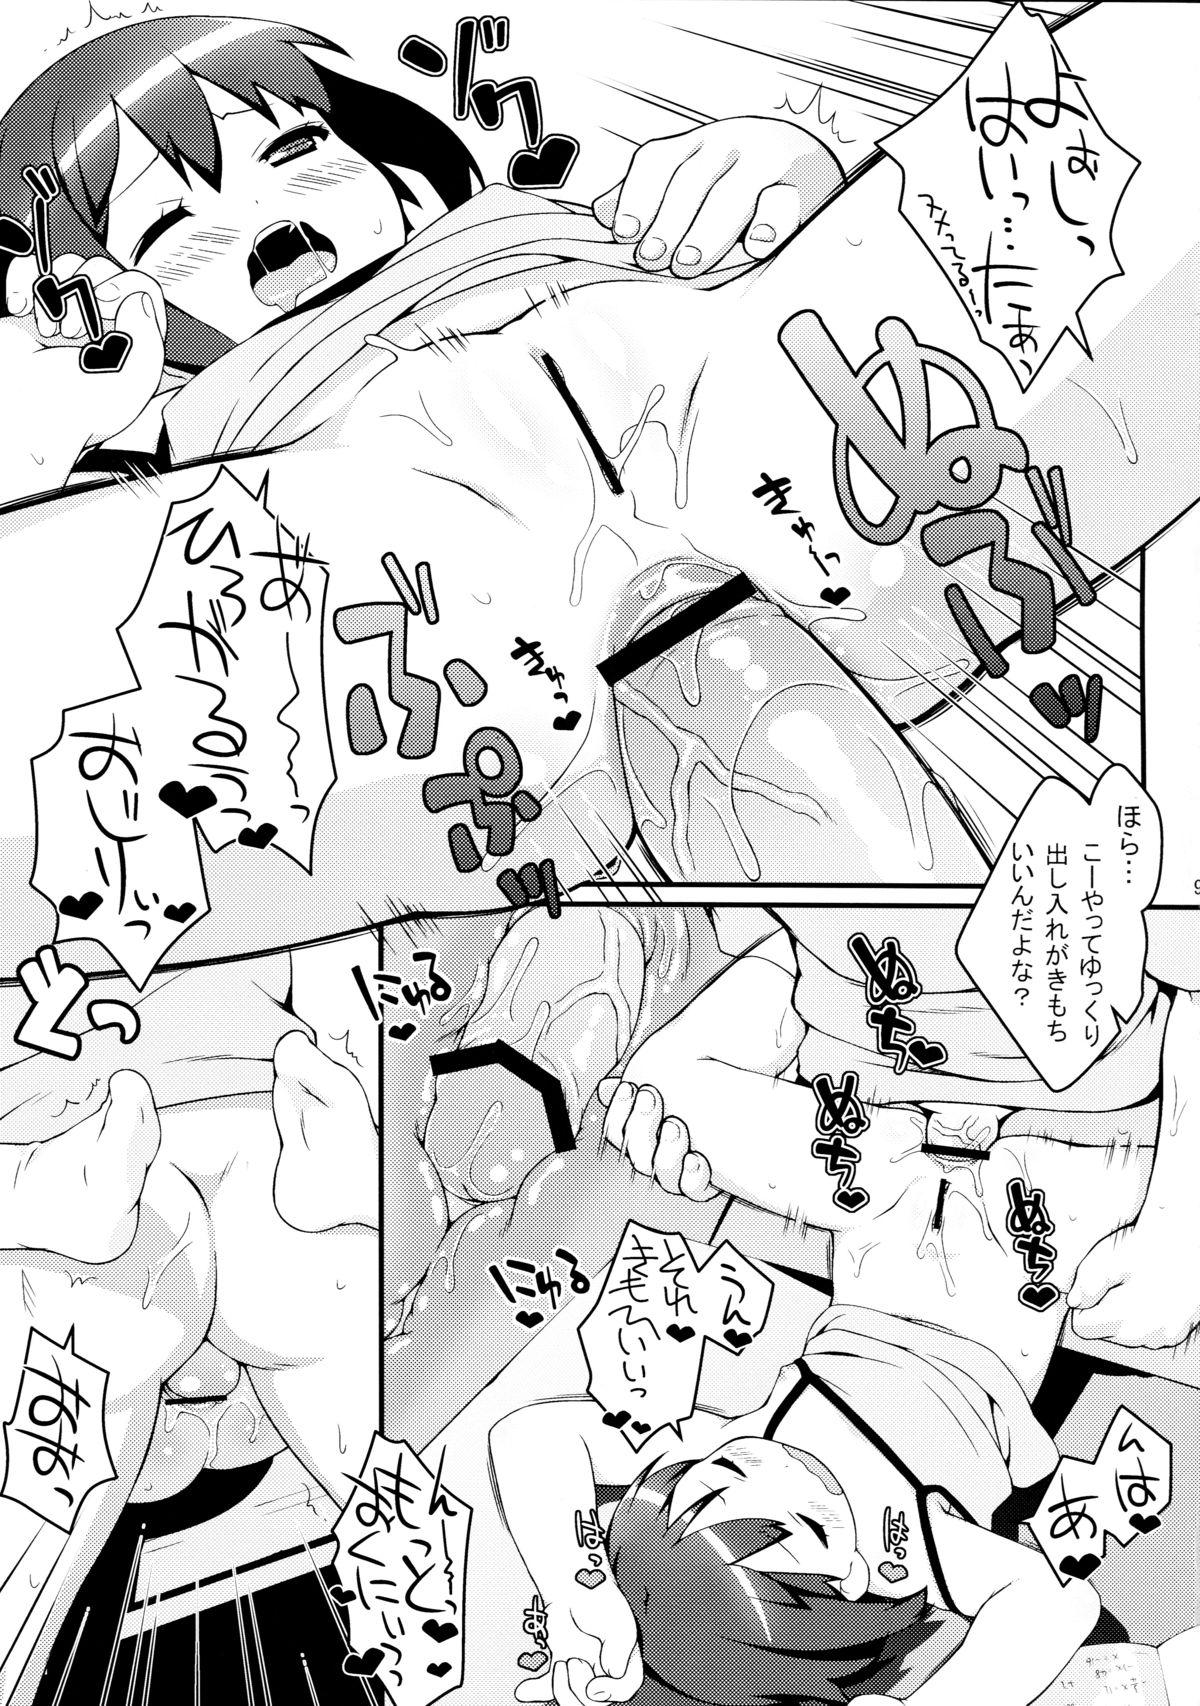 Dad Imouto ni mo Koi ga Shitai - Chuunibyou demo koi ga shitai Ftvgirls - Page 9